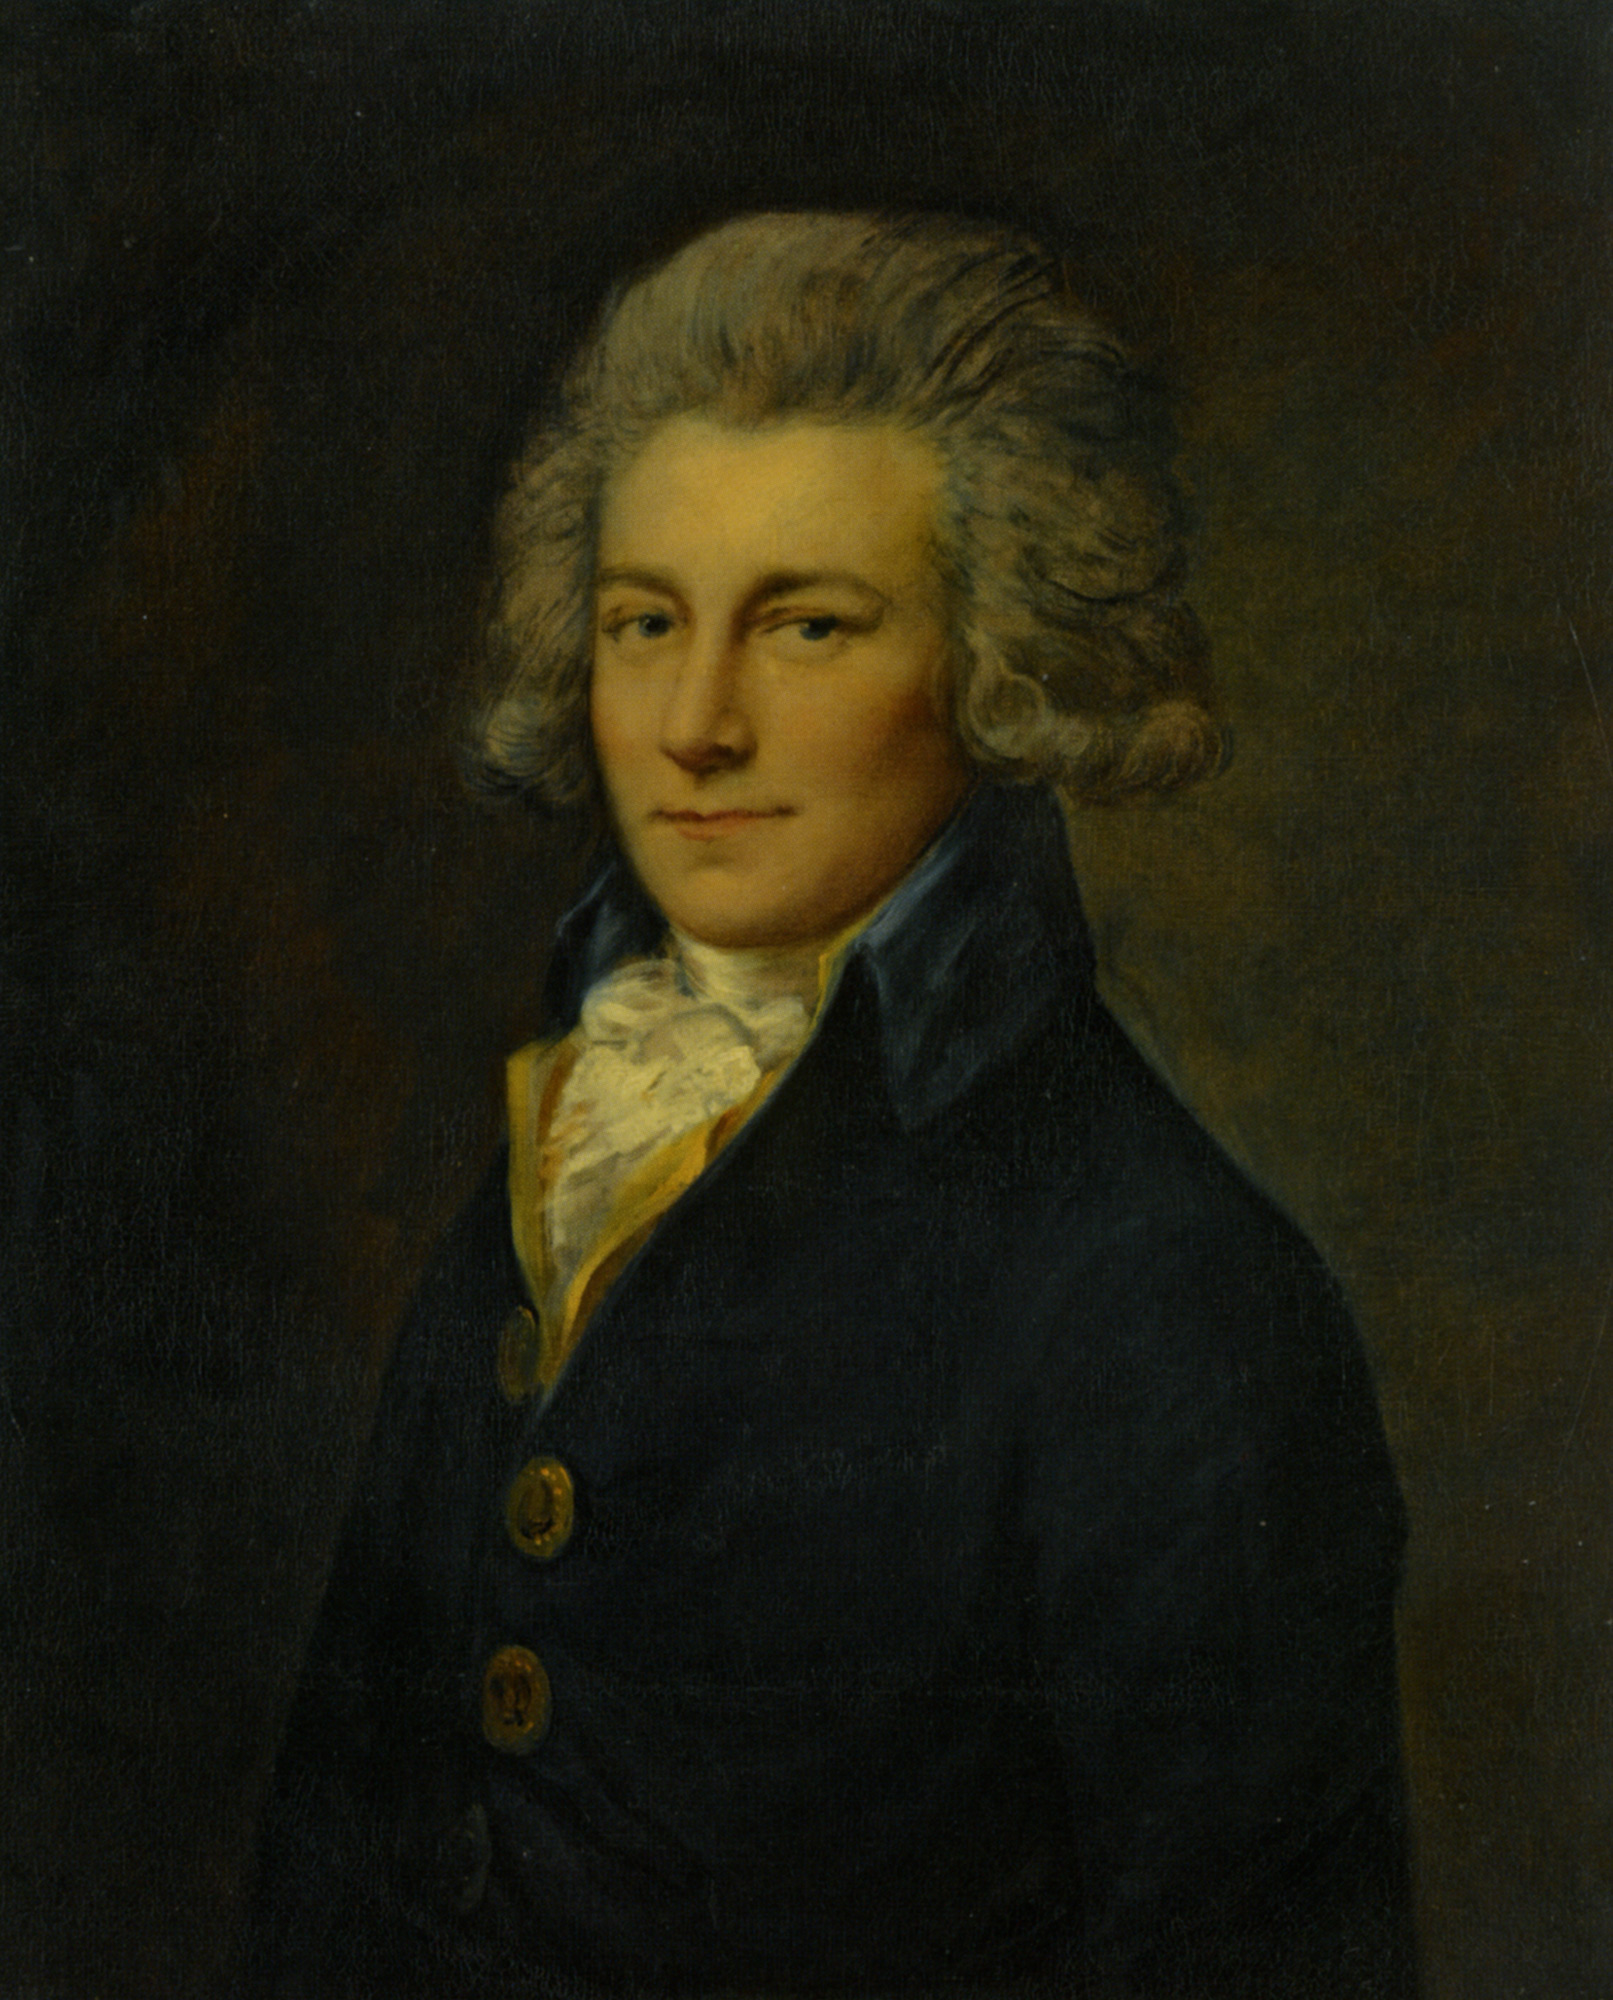 Captain Bligh - Joshua Reynolds - WikiArt.org